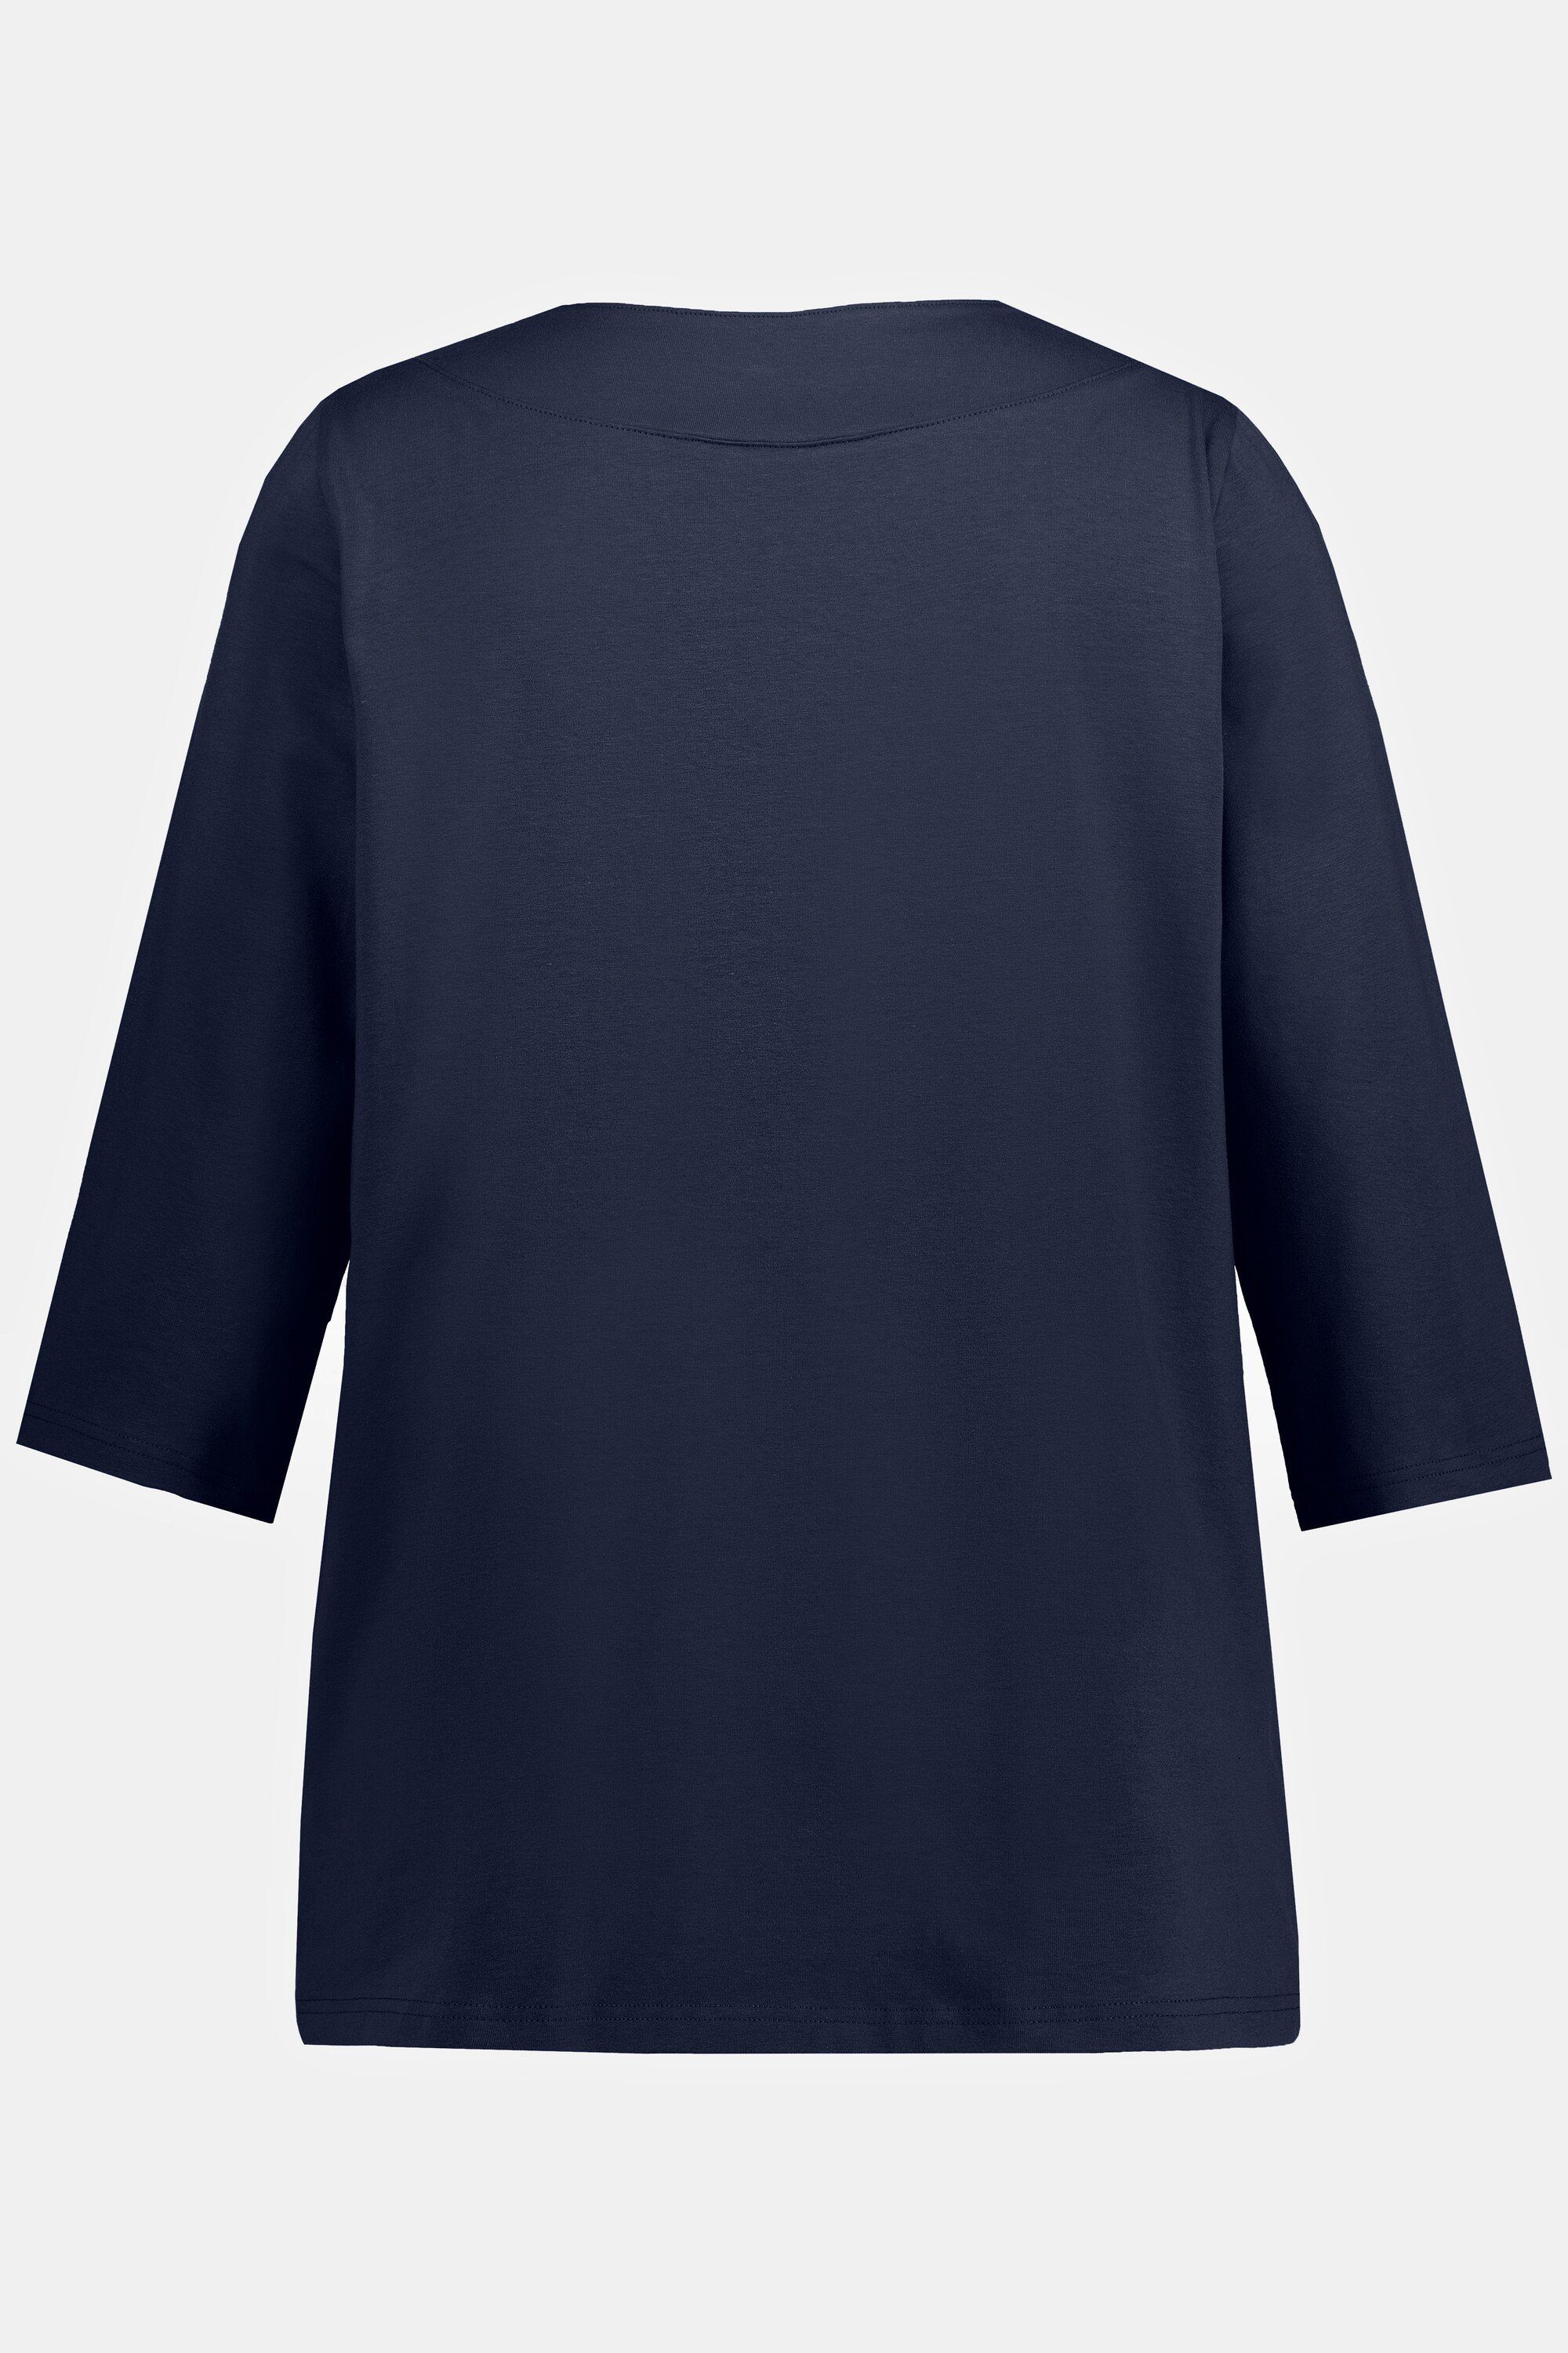 Popken Ulla V-Ausschnitt ausgeschnittene Schulter T-Shirt Longsleeve marine